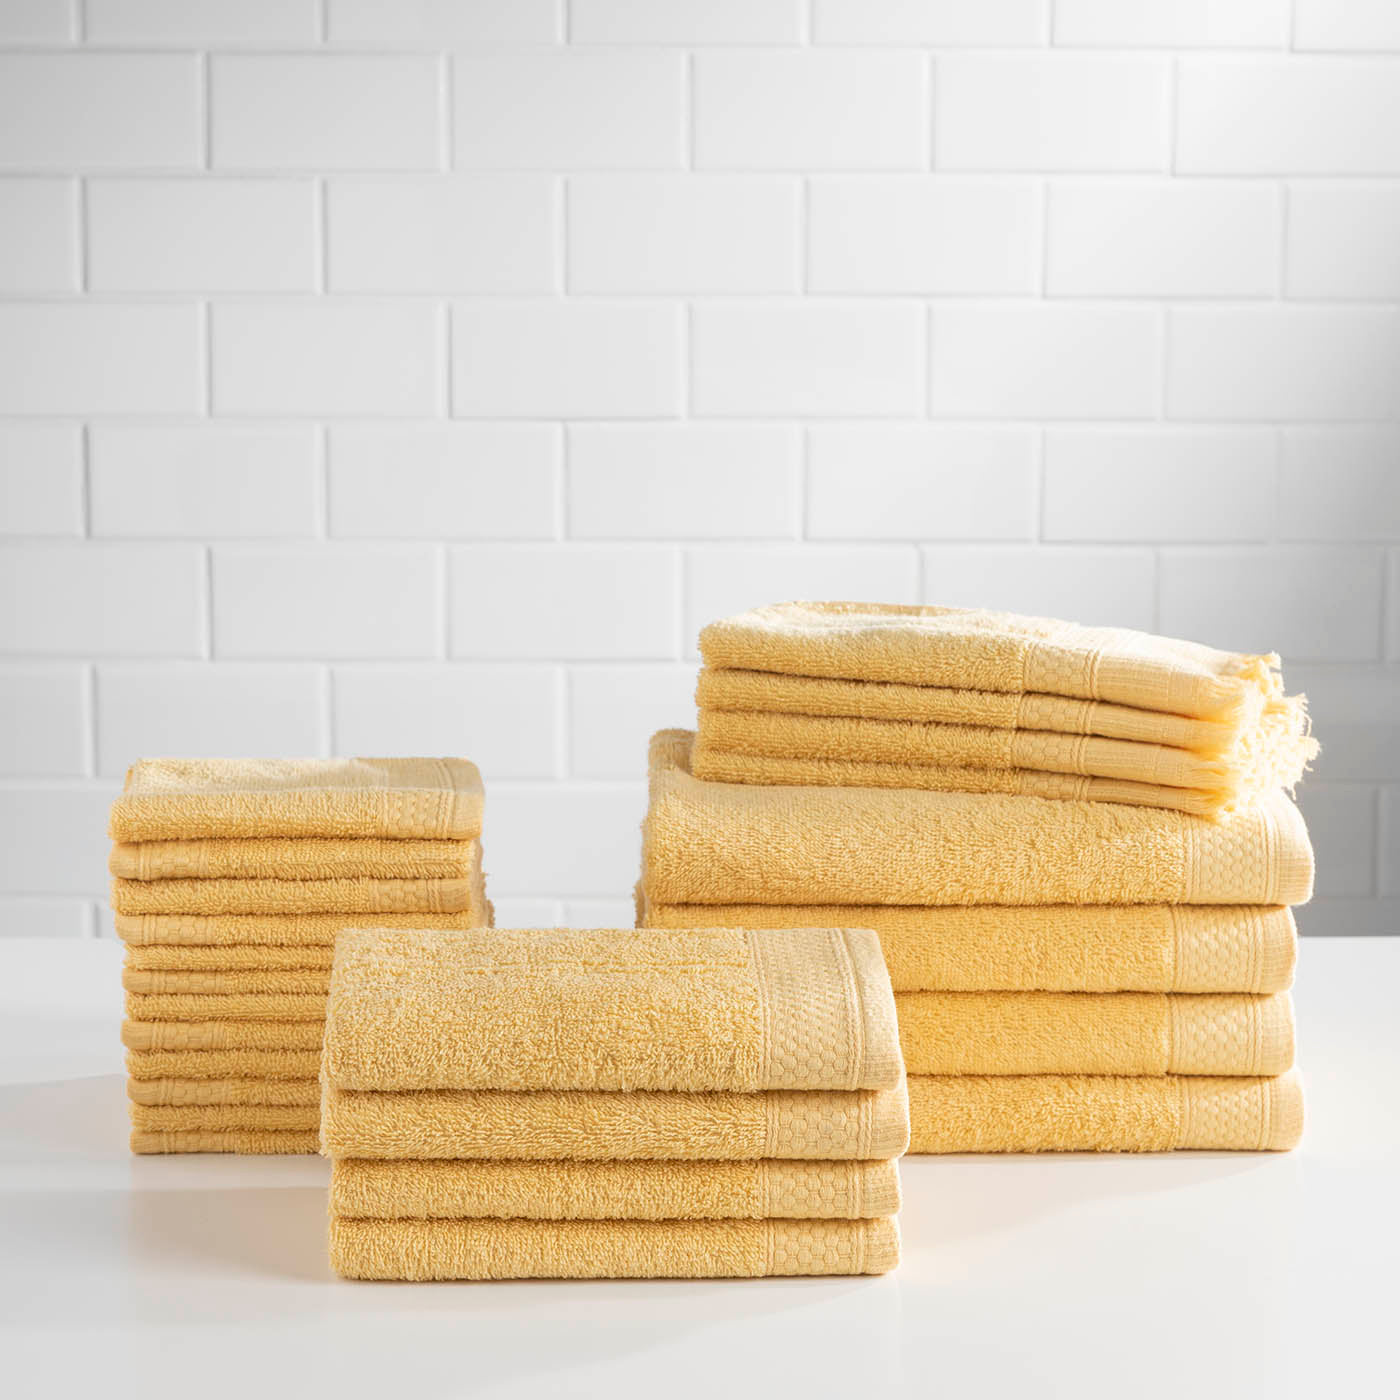 Baltic Linen 100% Cotton 12 Piece Luxury Towel Set - Cobalt